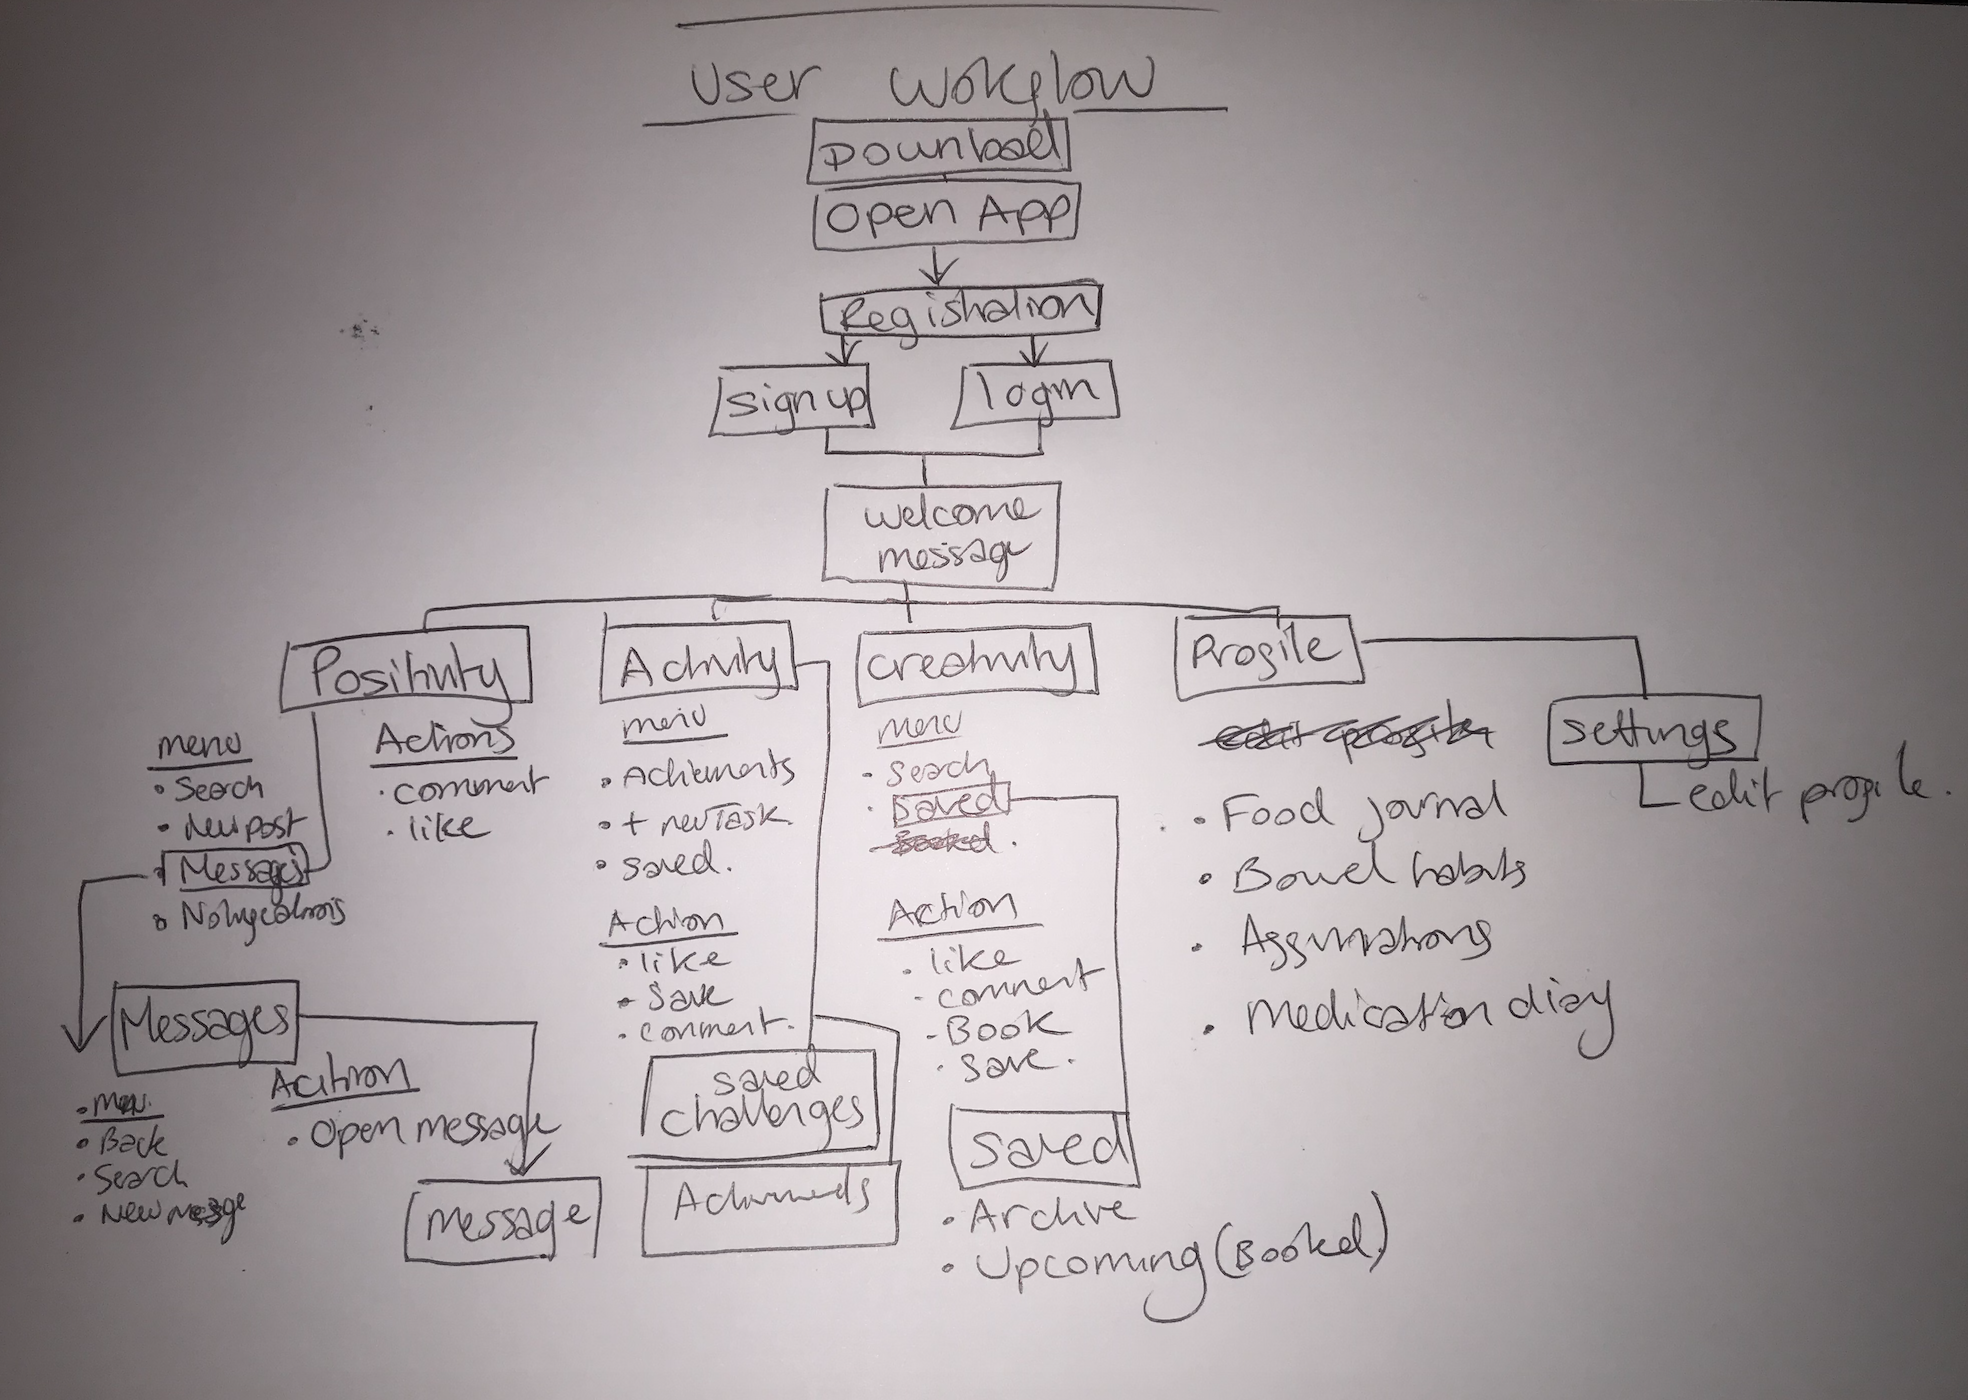 developing user workflow